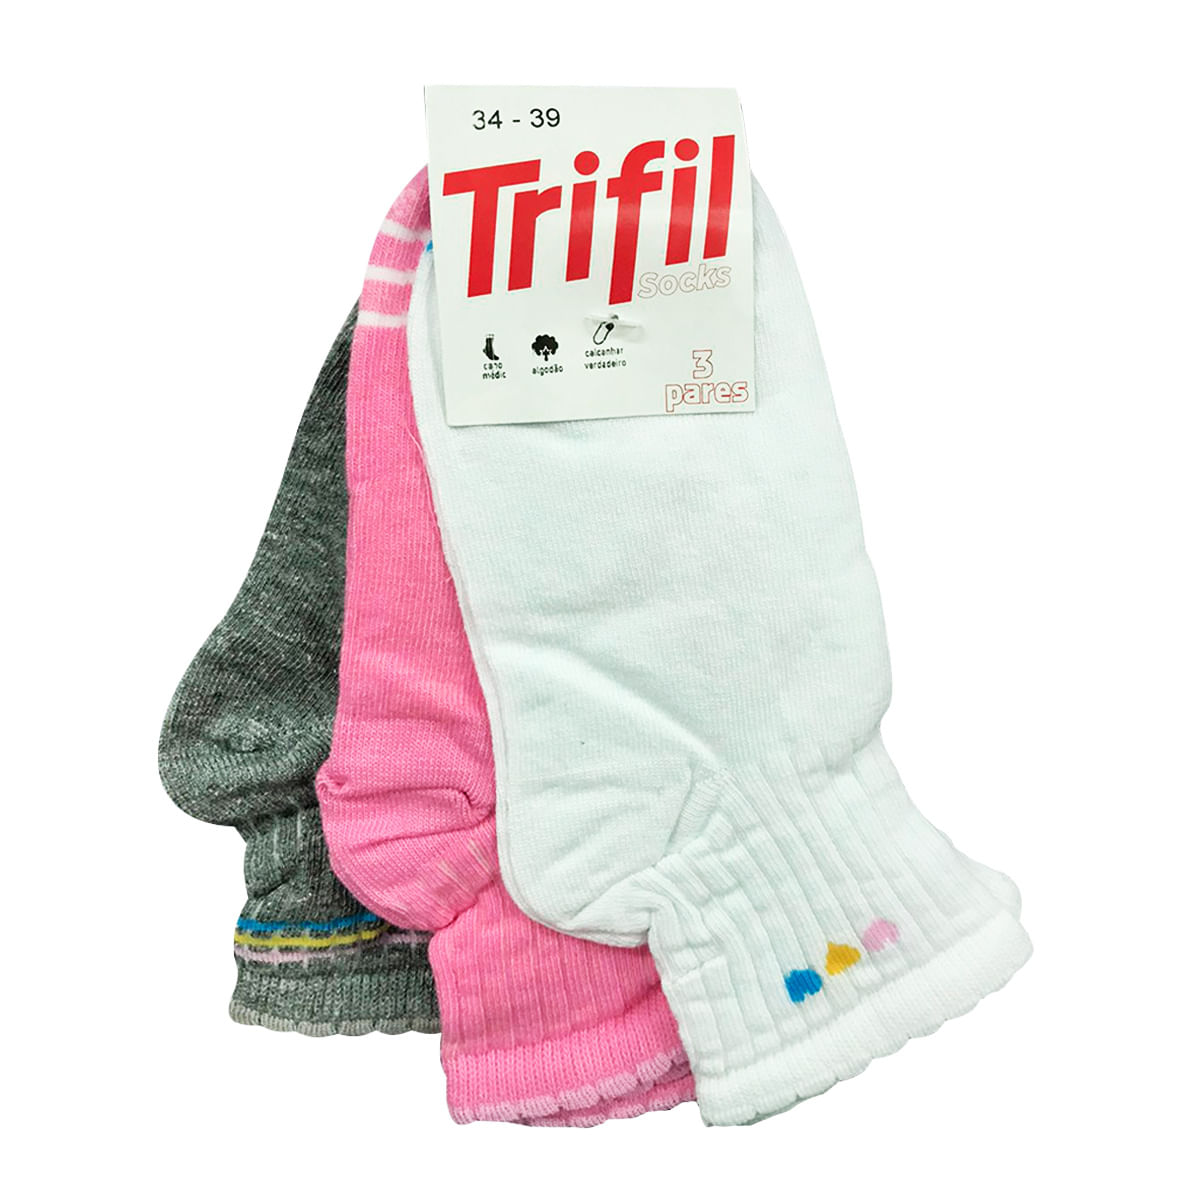 Kit Meia Feminina Cano Médio 5I Casual Estampada com 3 unidades Trifil Socks